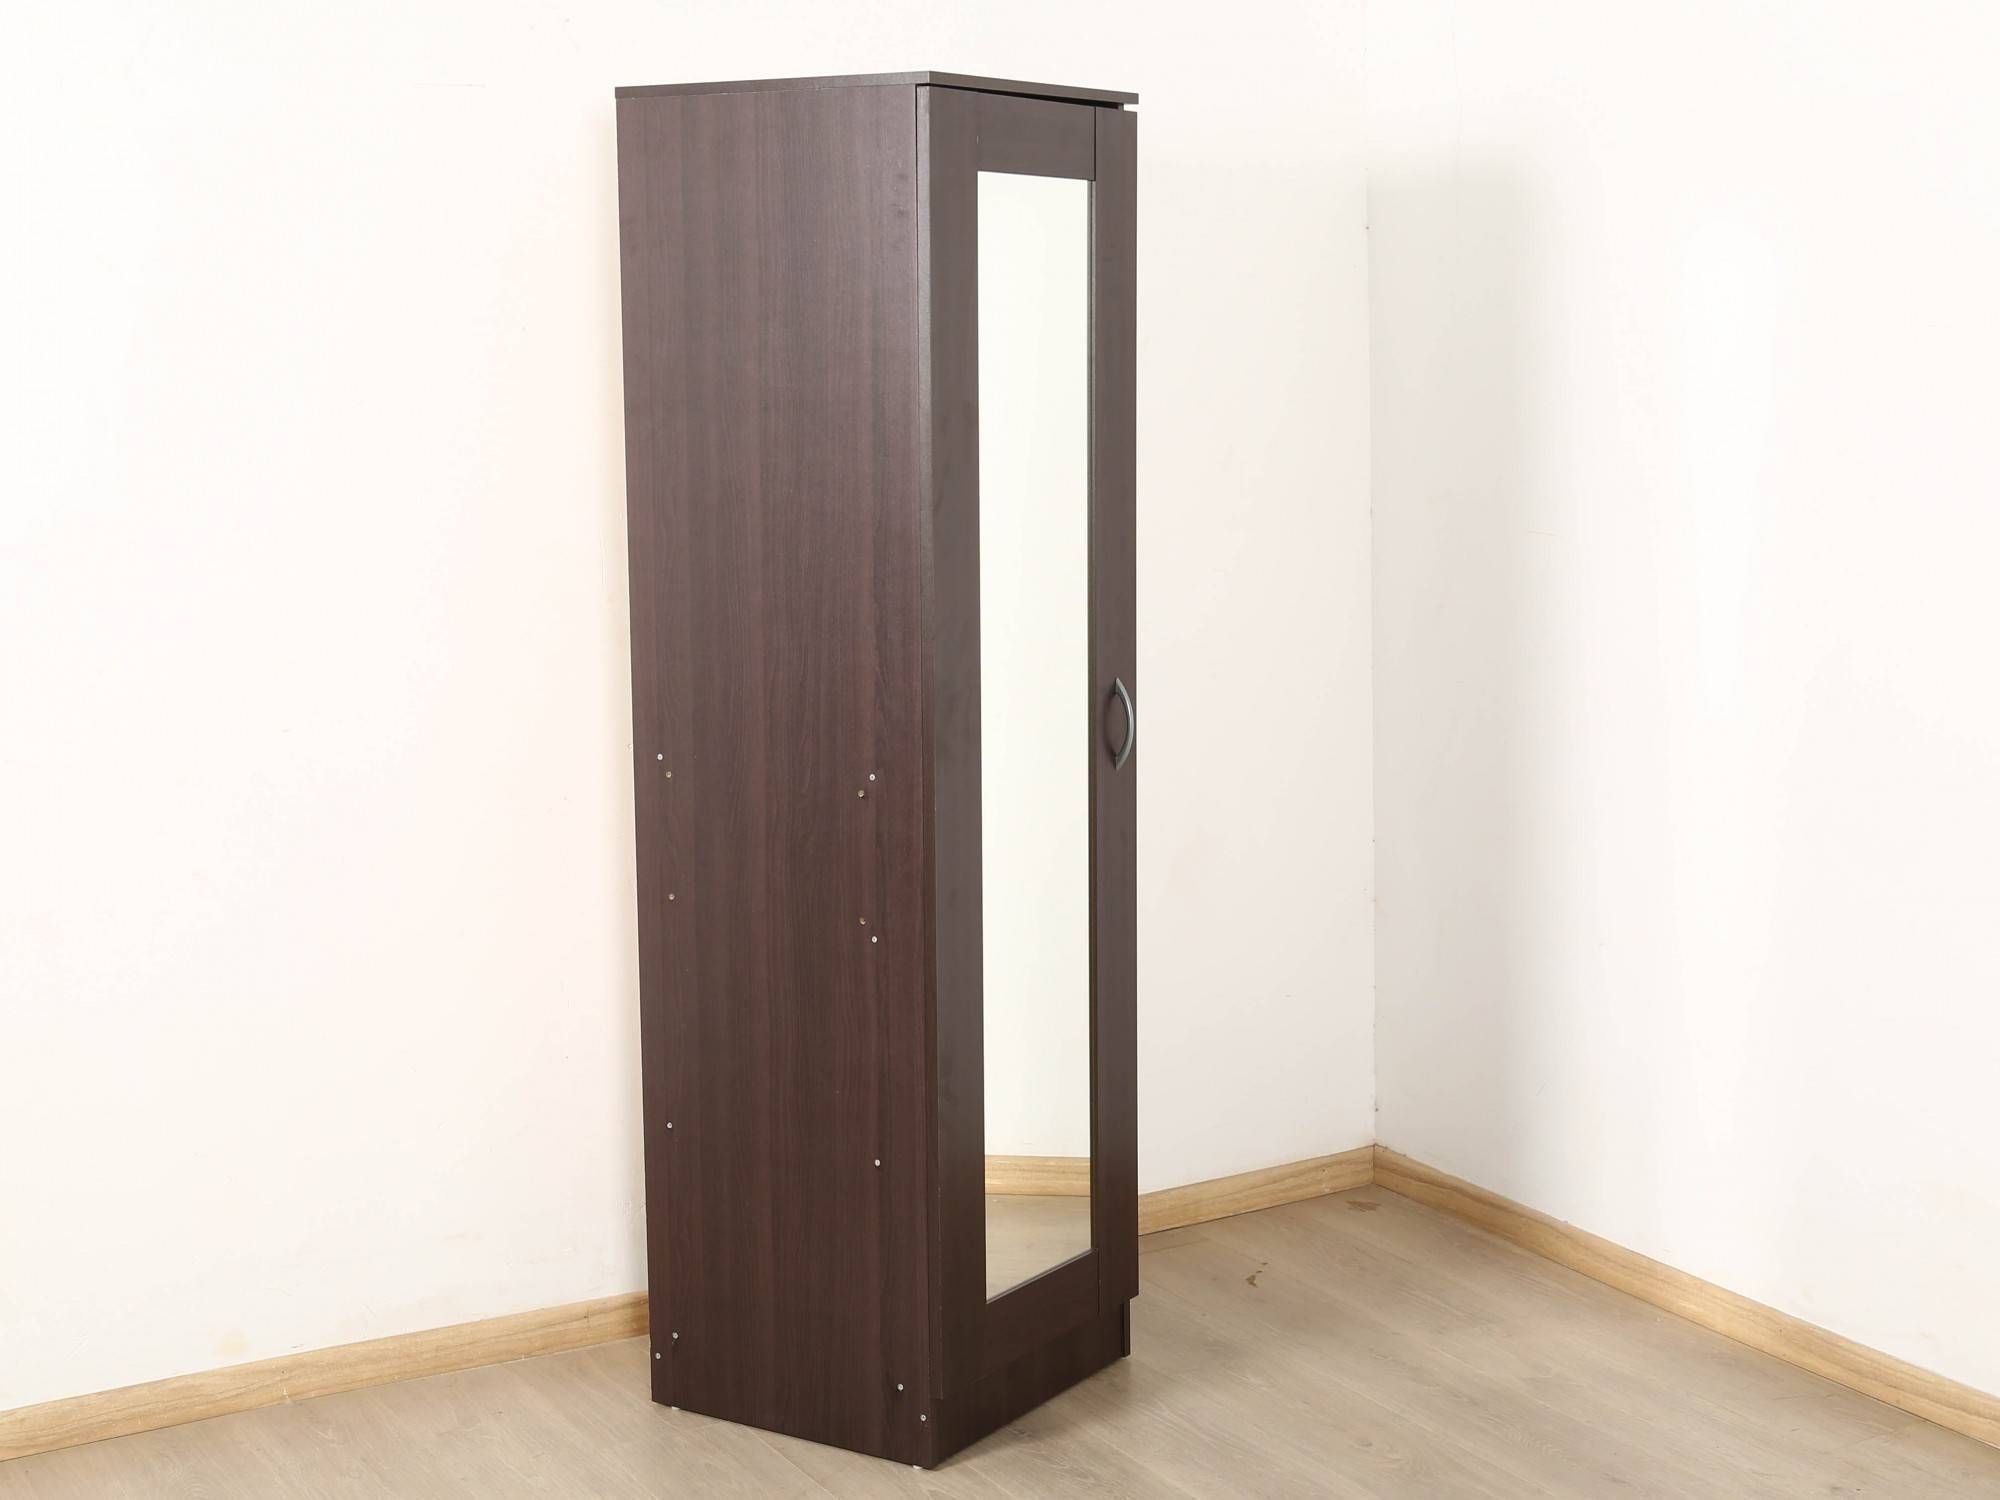 Namito Single Door Wardrobe With Mirror: Buy And Sell Used In One Door Wardrobes With Mirror (View 10 of 15)